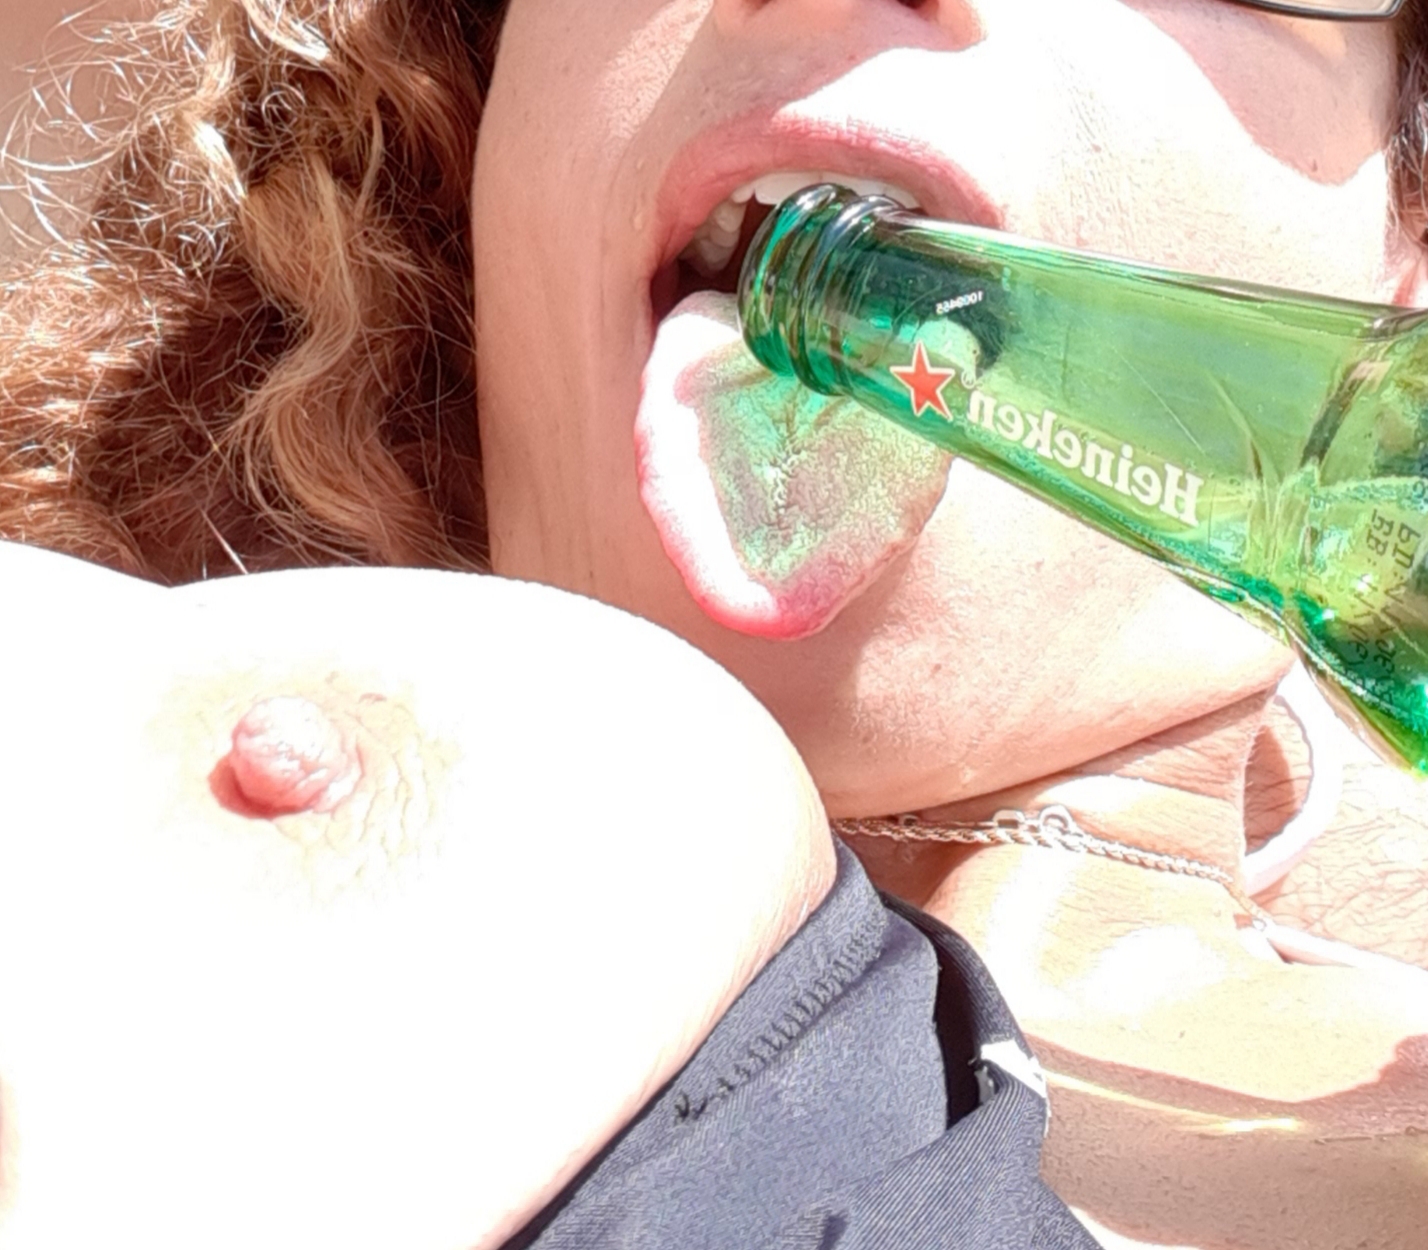 Heineken licking